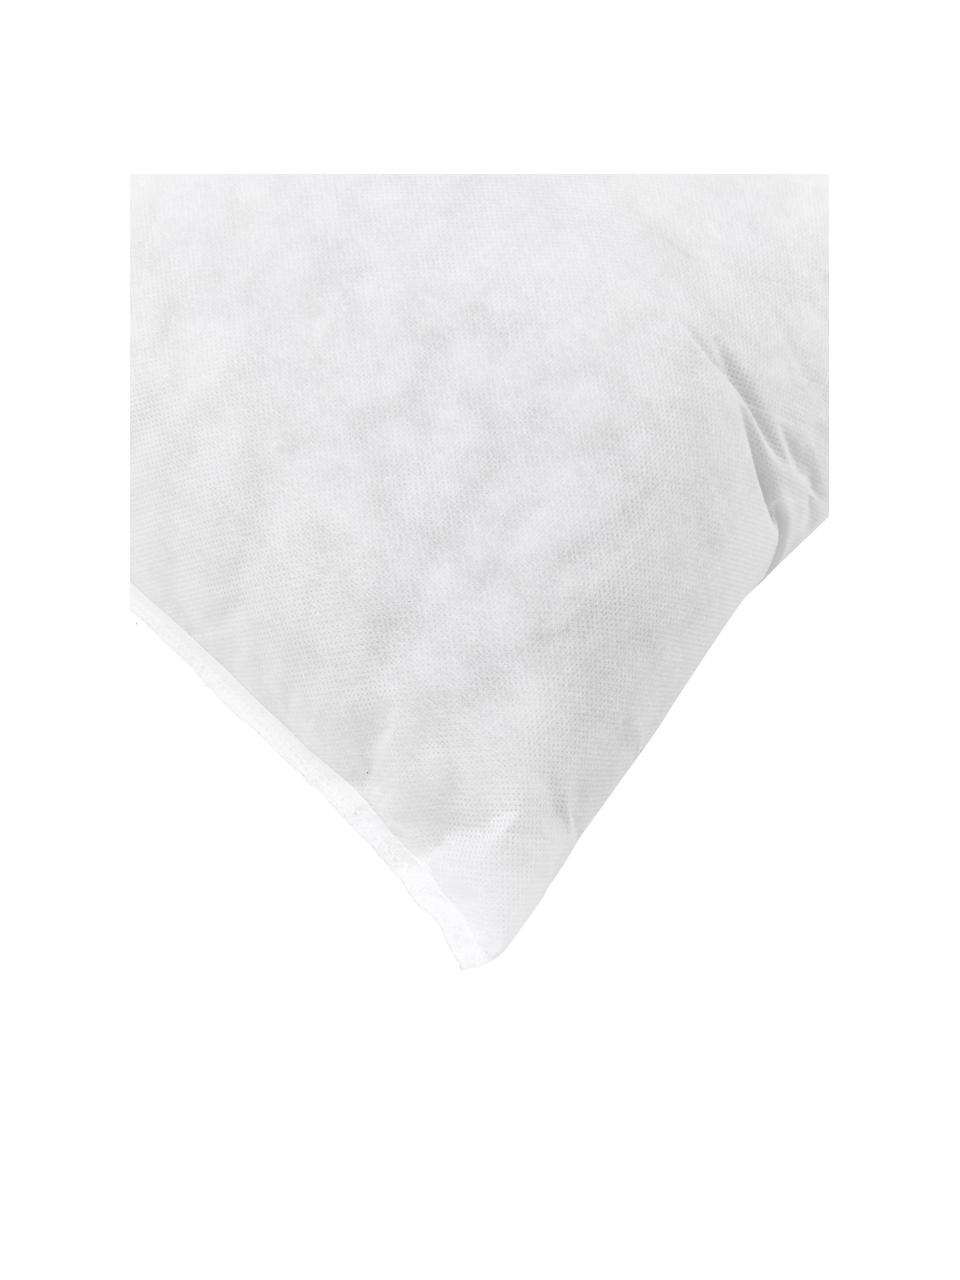 Wkład do poduszki Egret, 35x110, Tapicerka: włókna syntetyczne, Biały, S 35 x D 110 cm